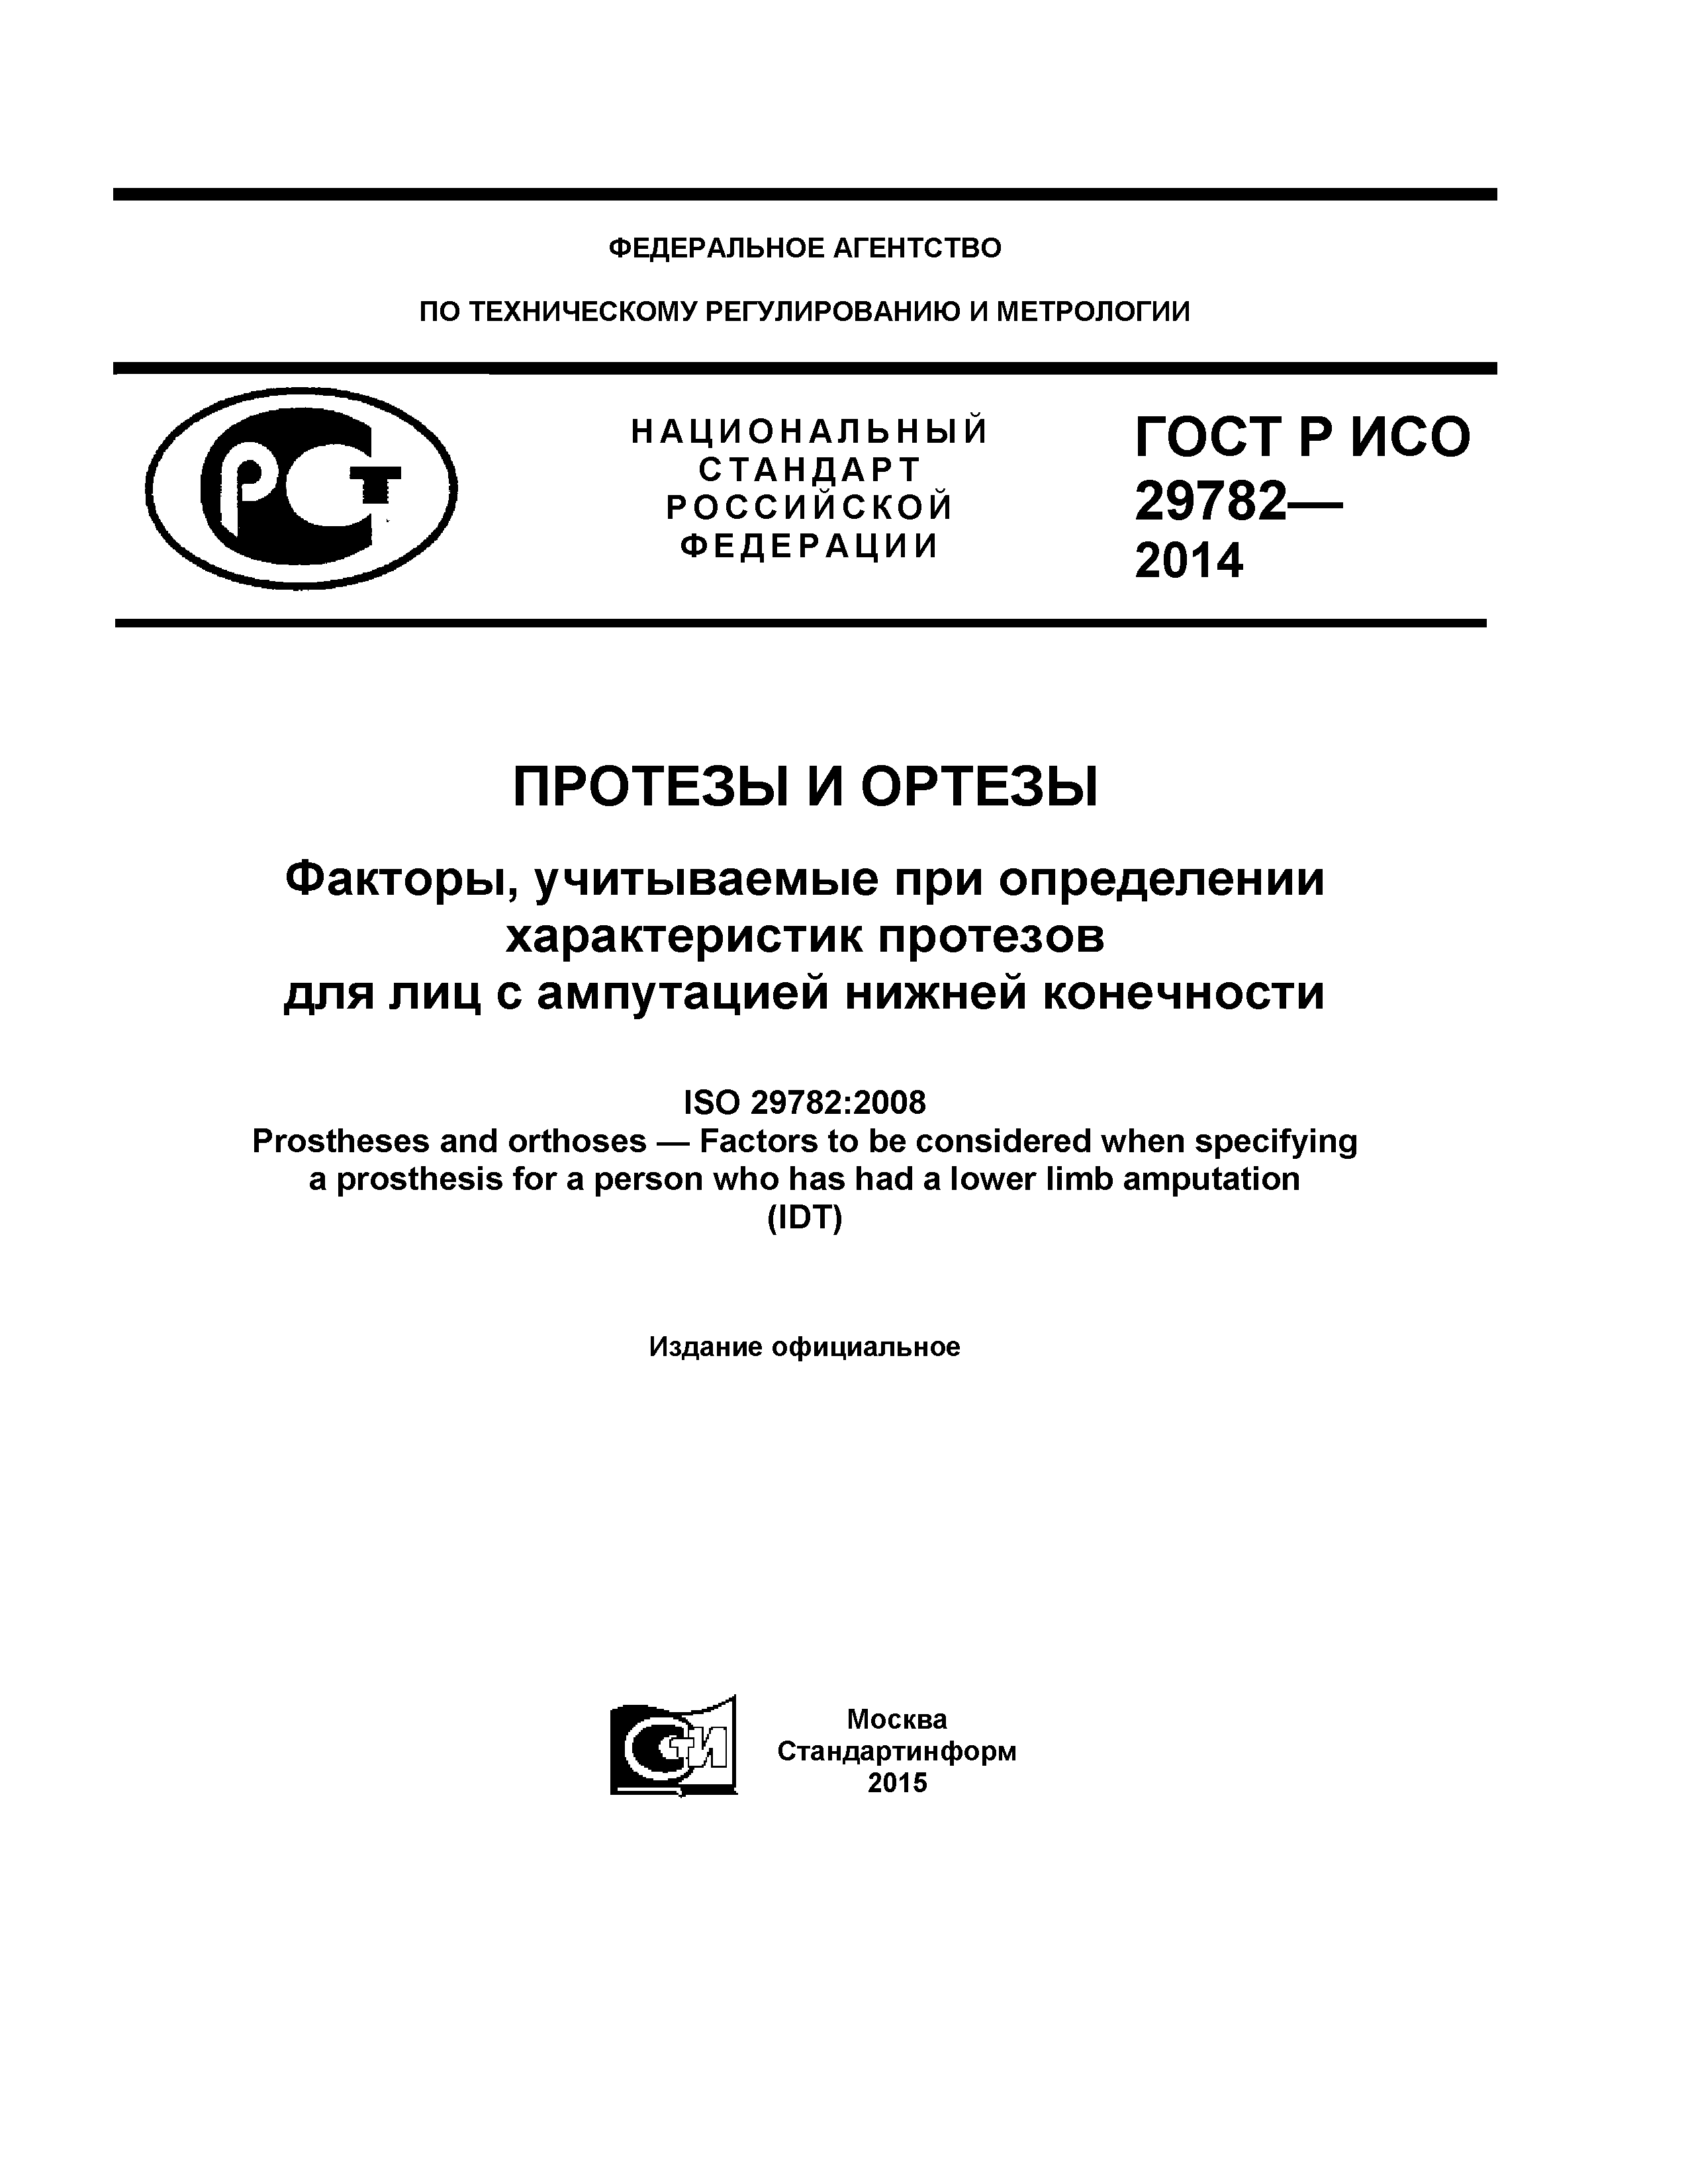 ГОСТ Р ИСО 29782-2014